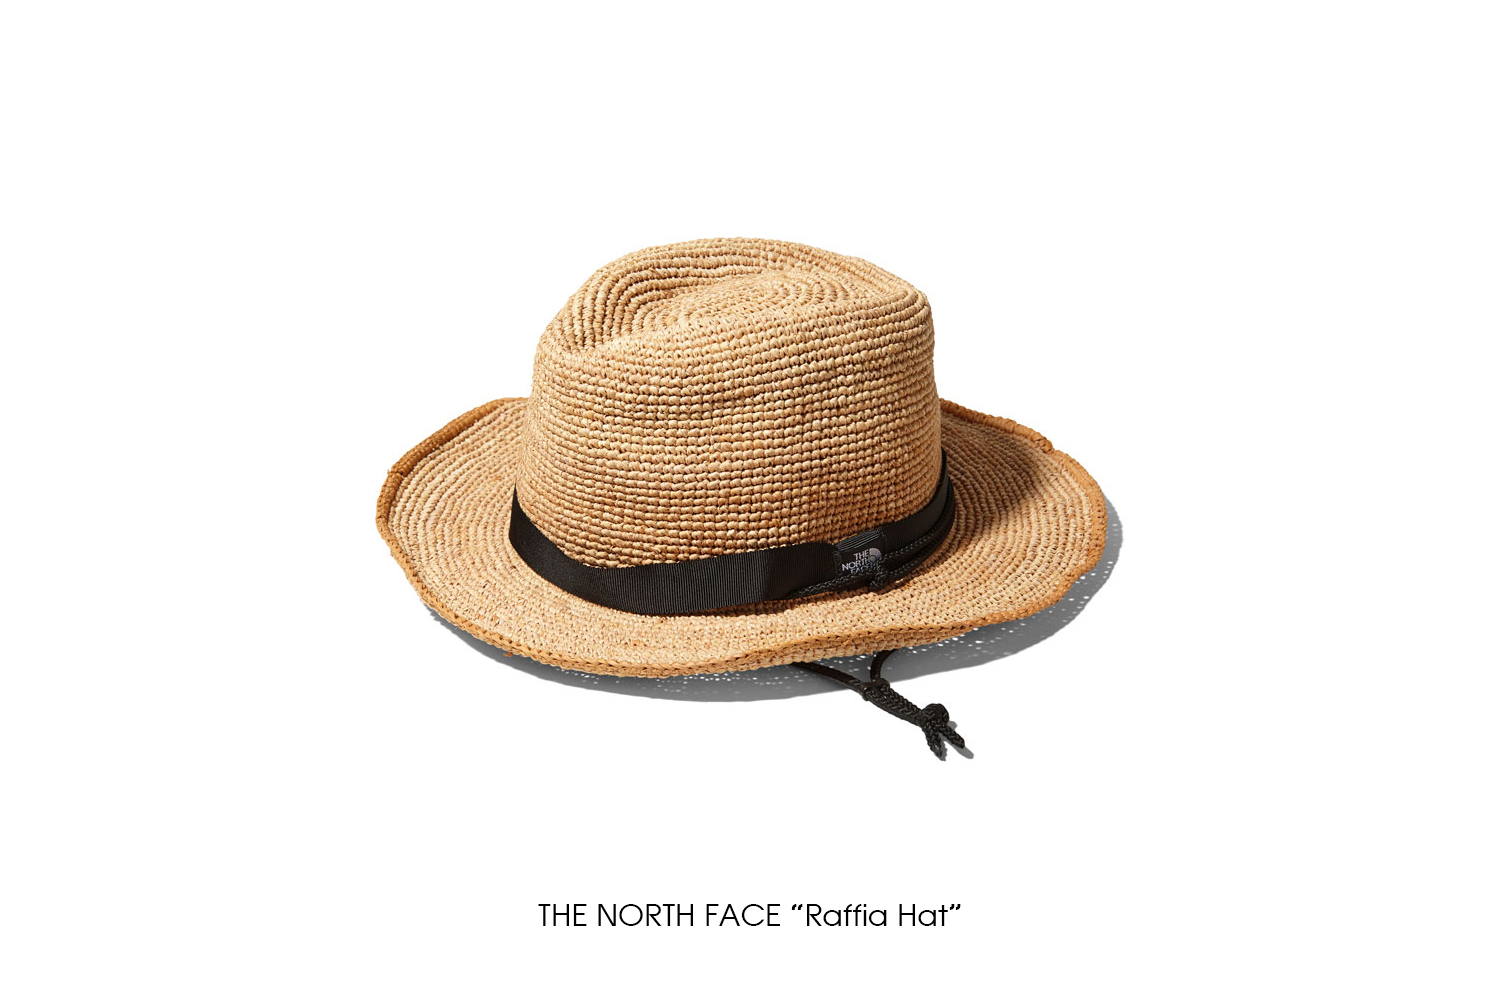 THE NORTH FACE "Raffia Hat"